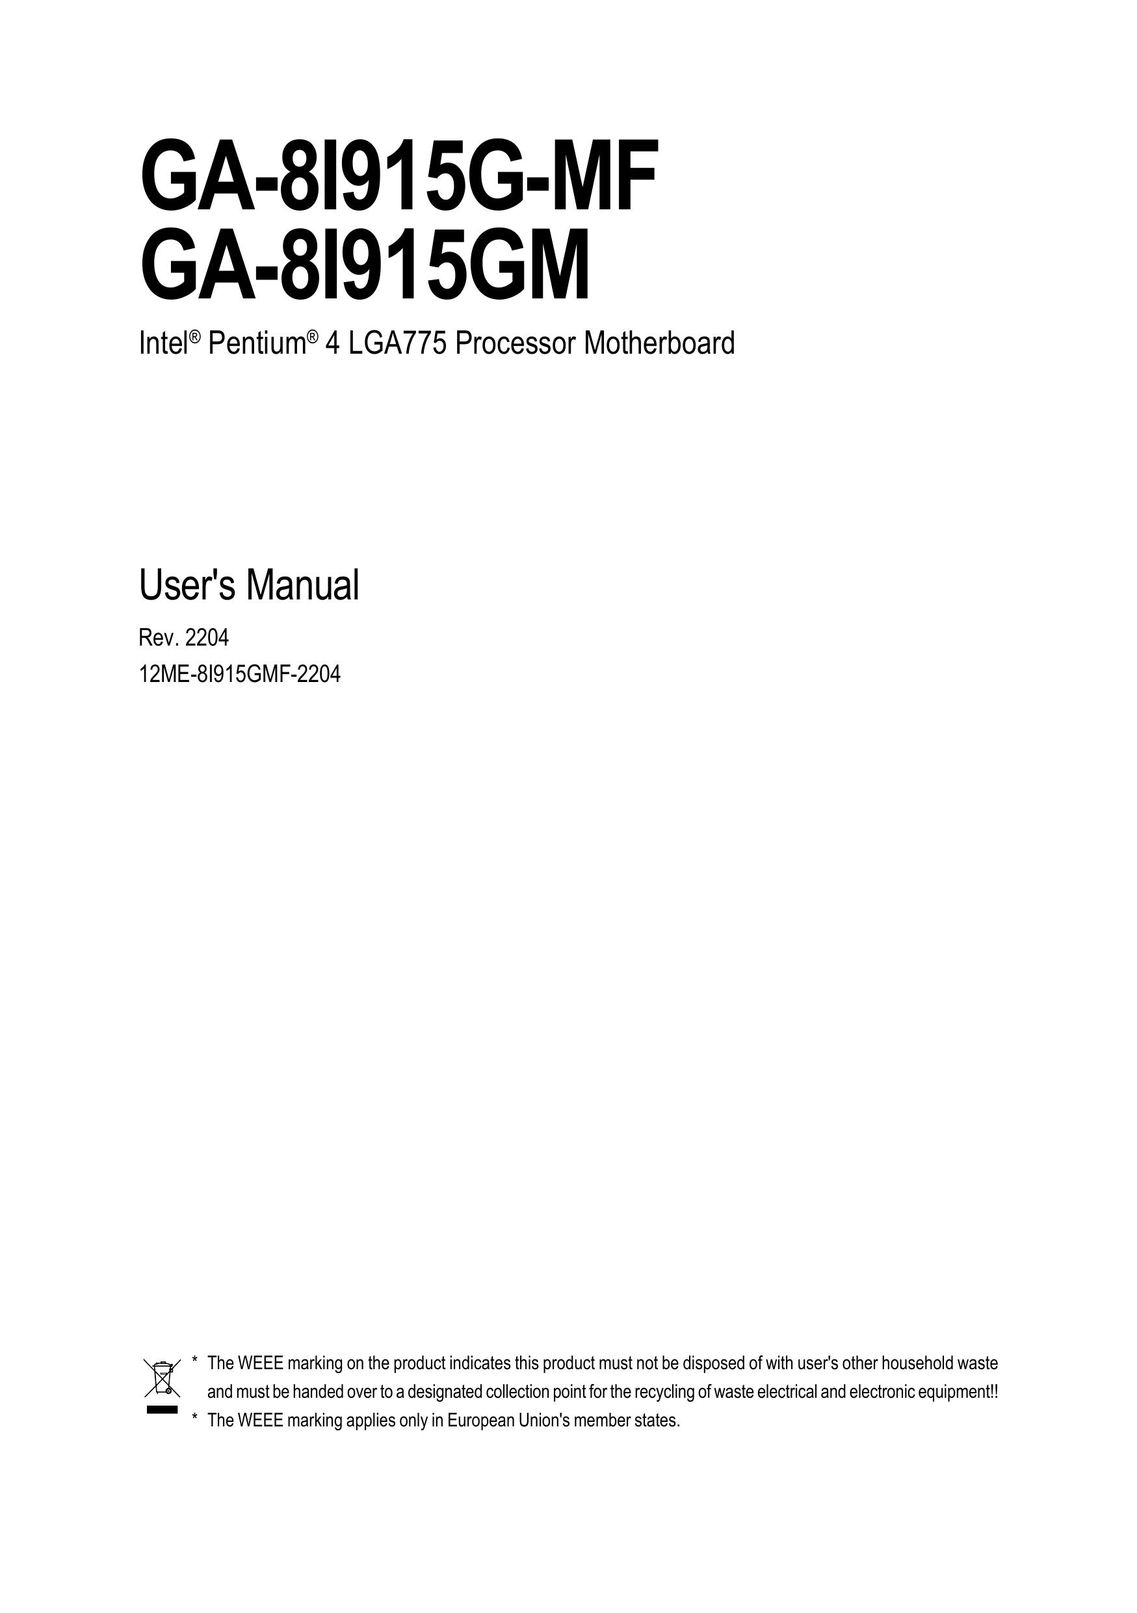 Gigabyte GA-8I915G-MF Computer Hardware User Manual